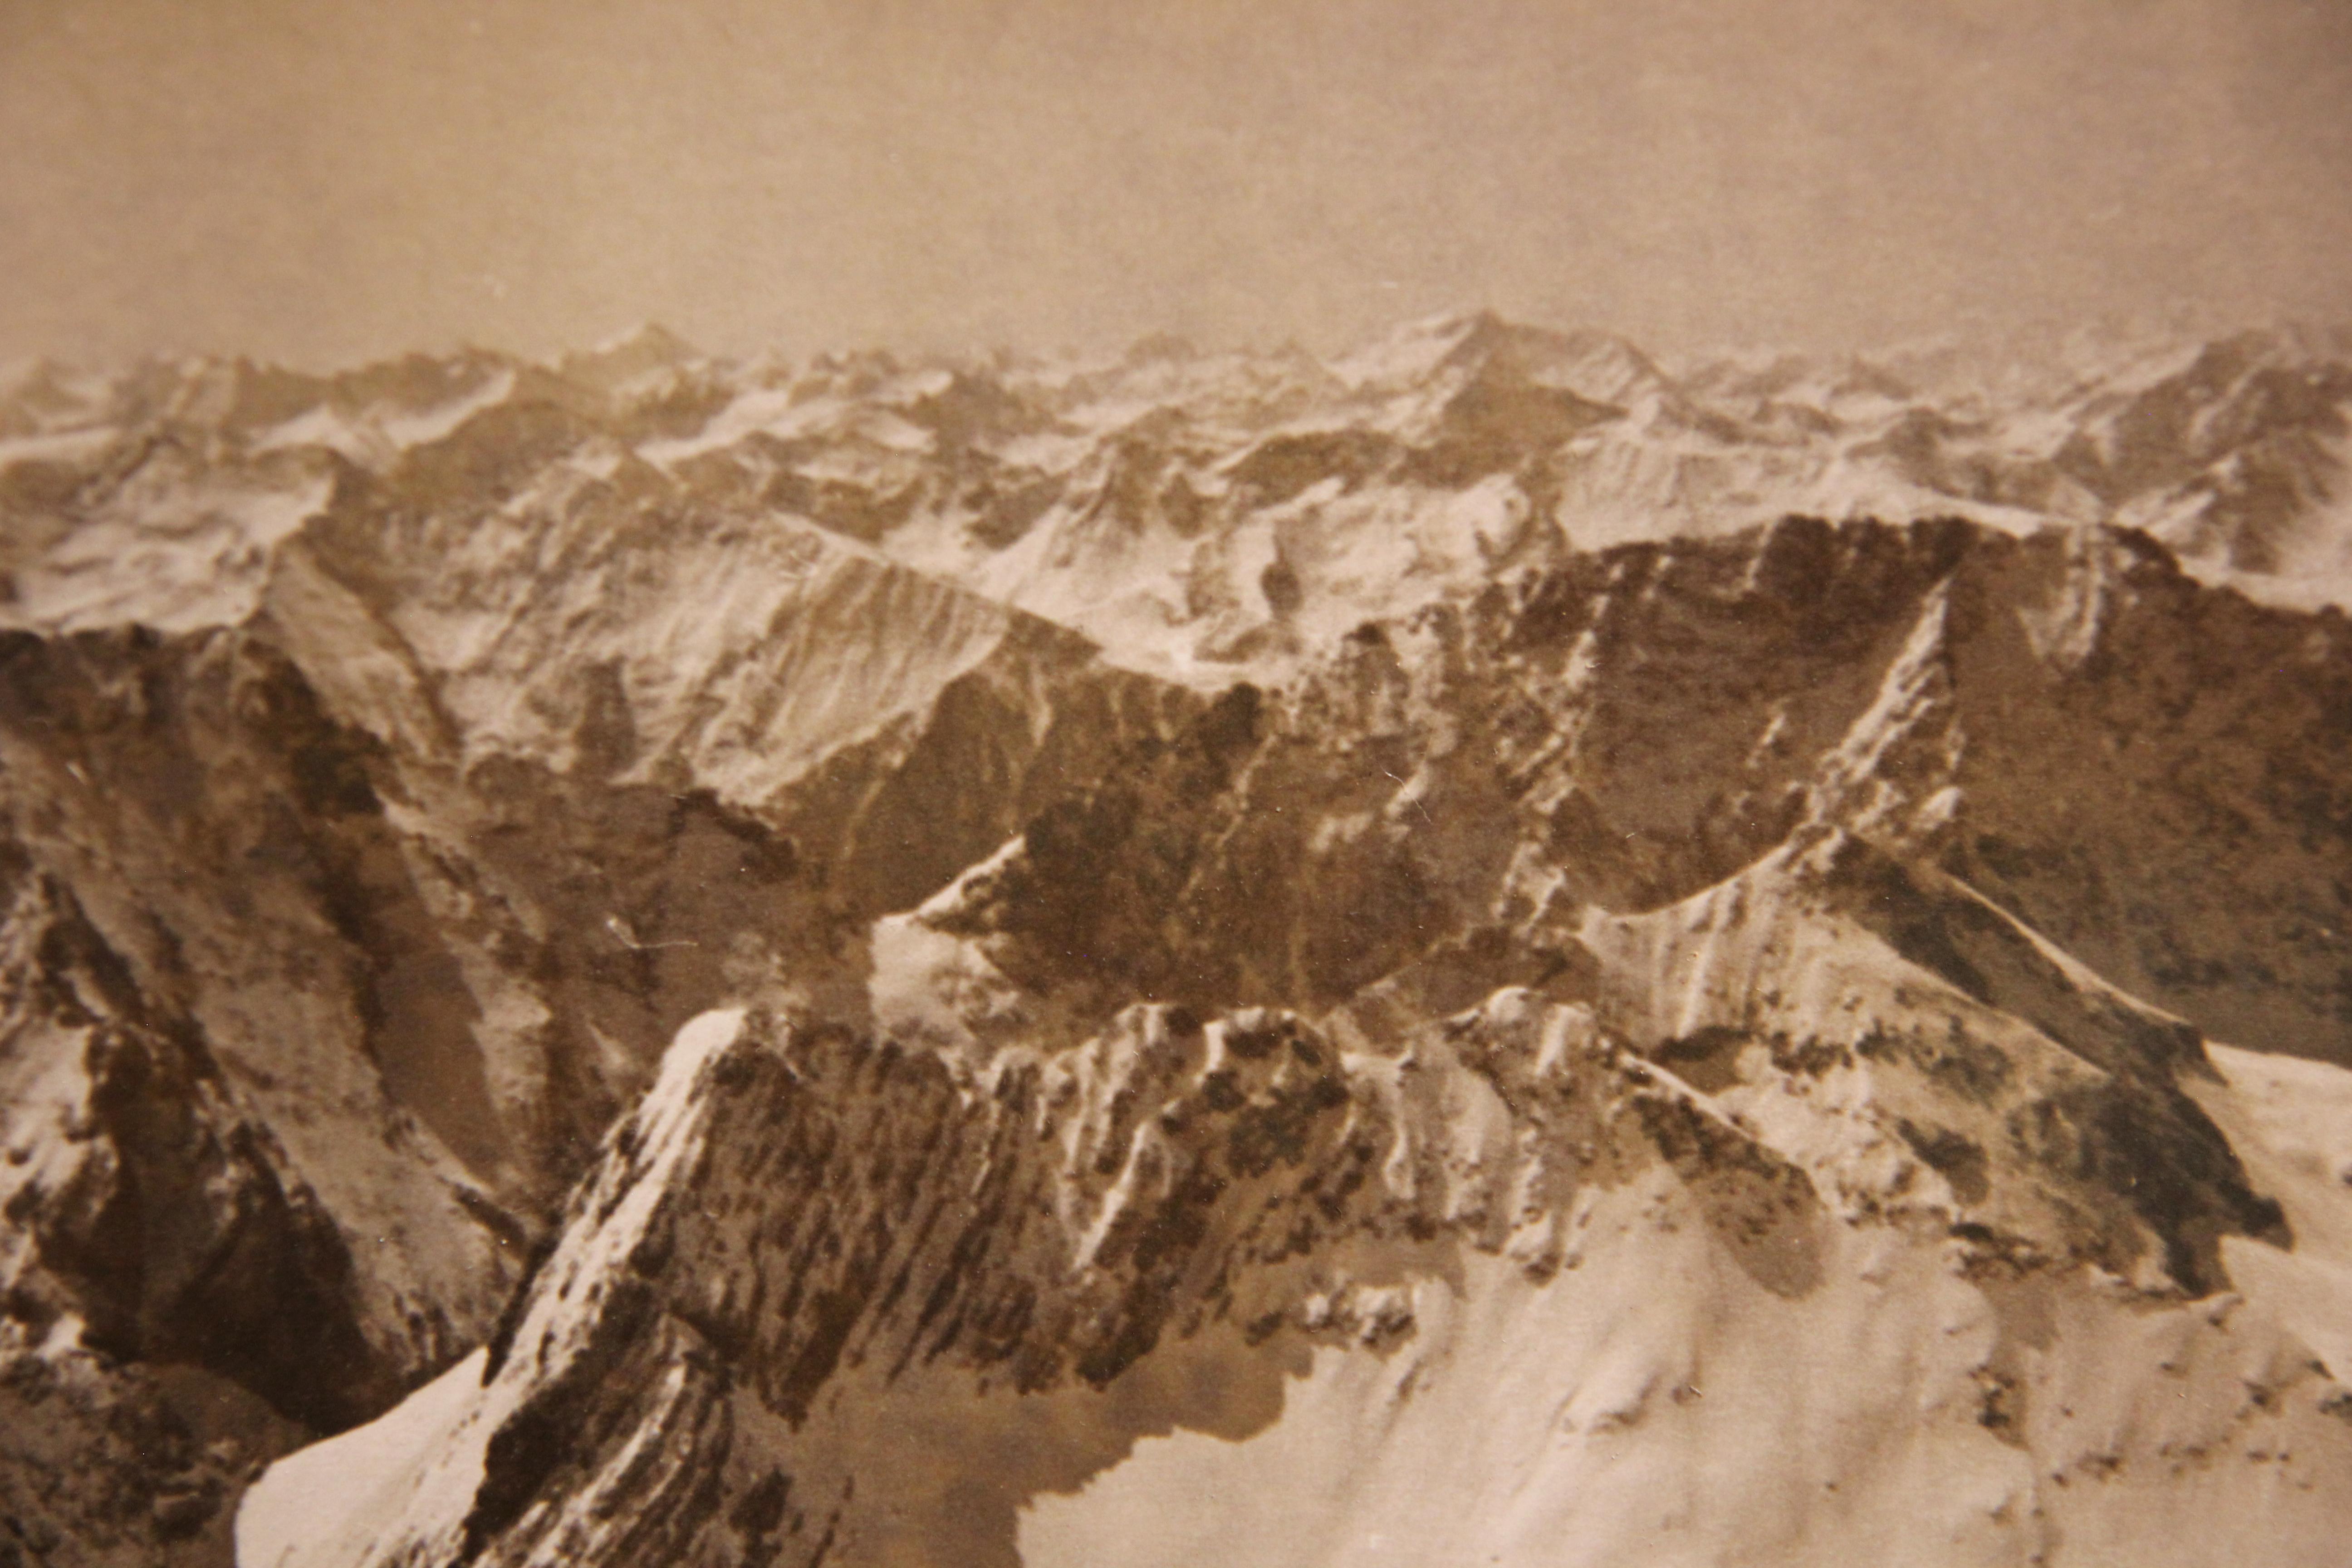 Photographie en noir et blanc de sommets de montagne enneigés. La photographie est attachée à une planche pour la protéger de la flexion.